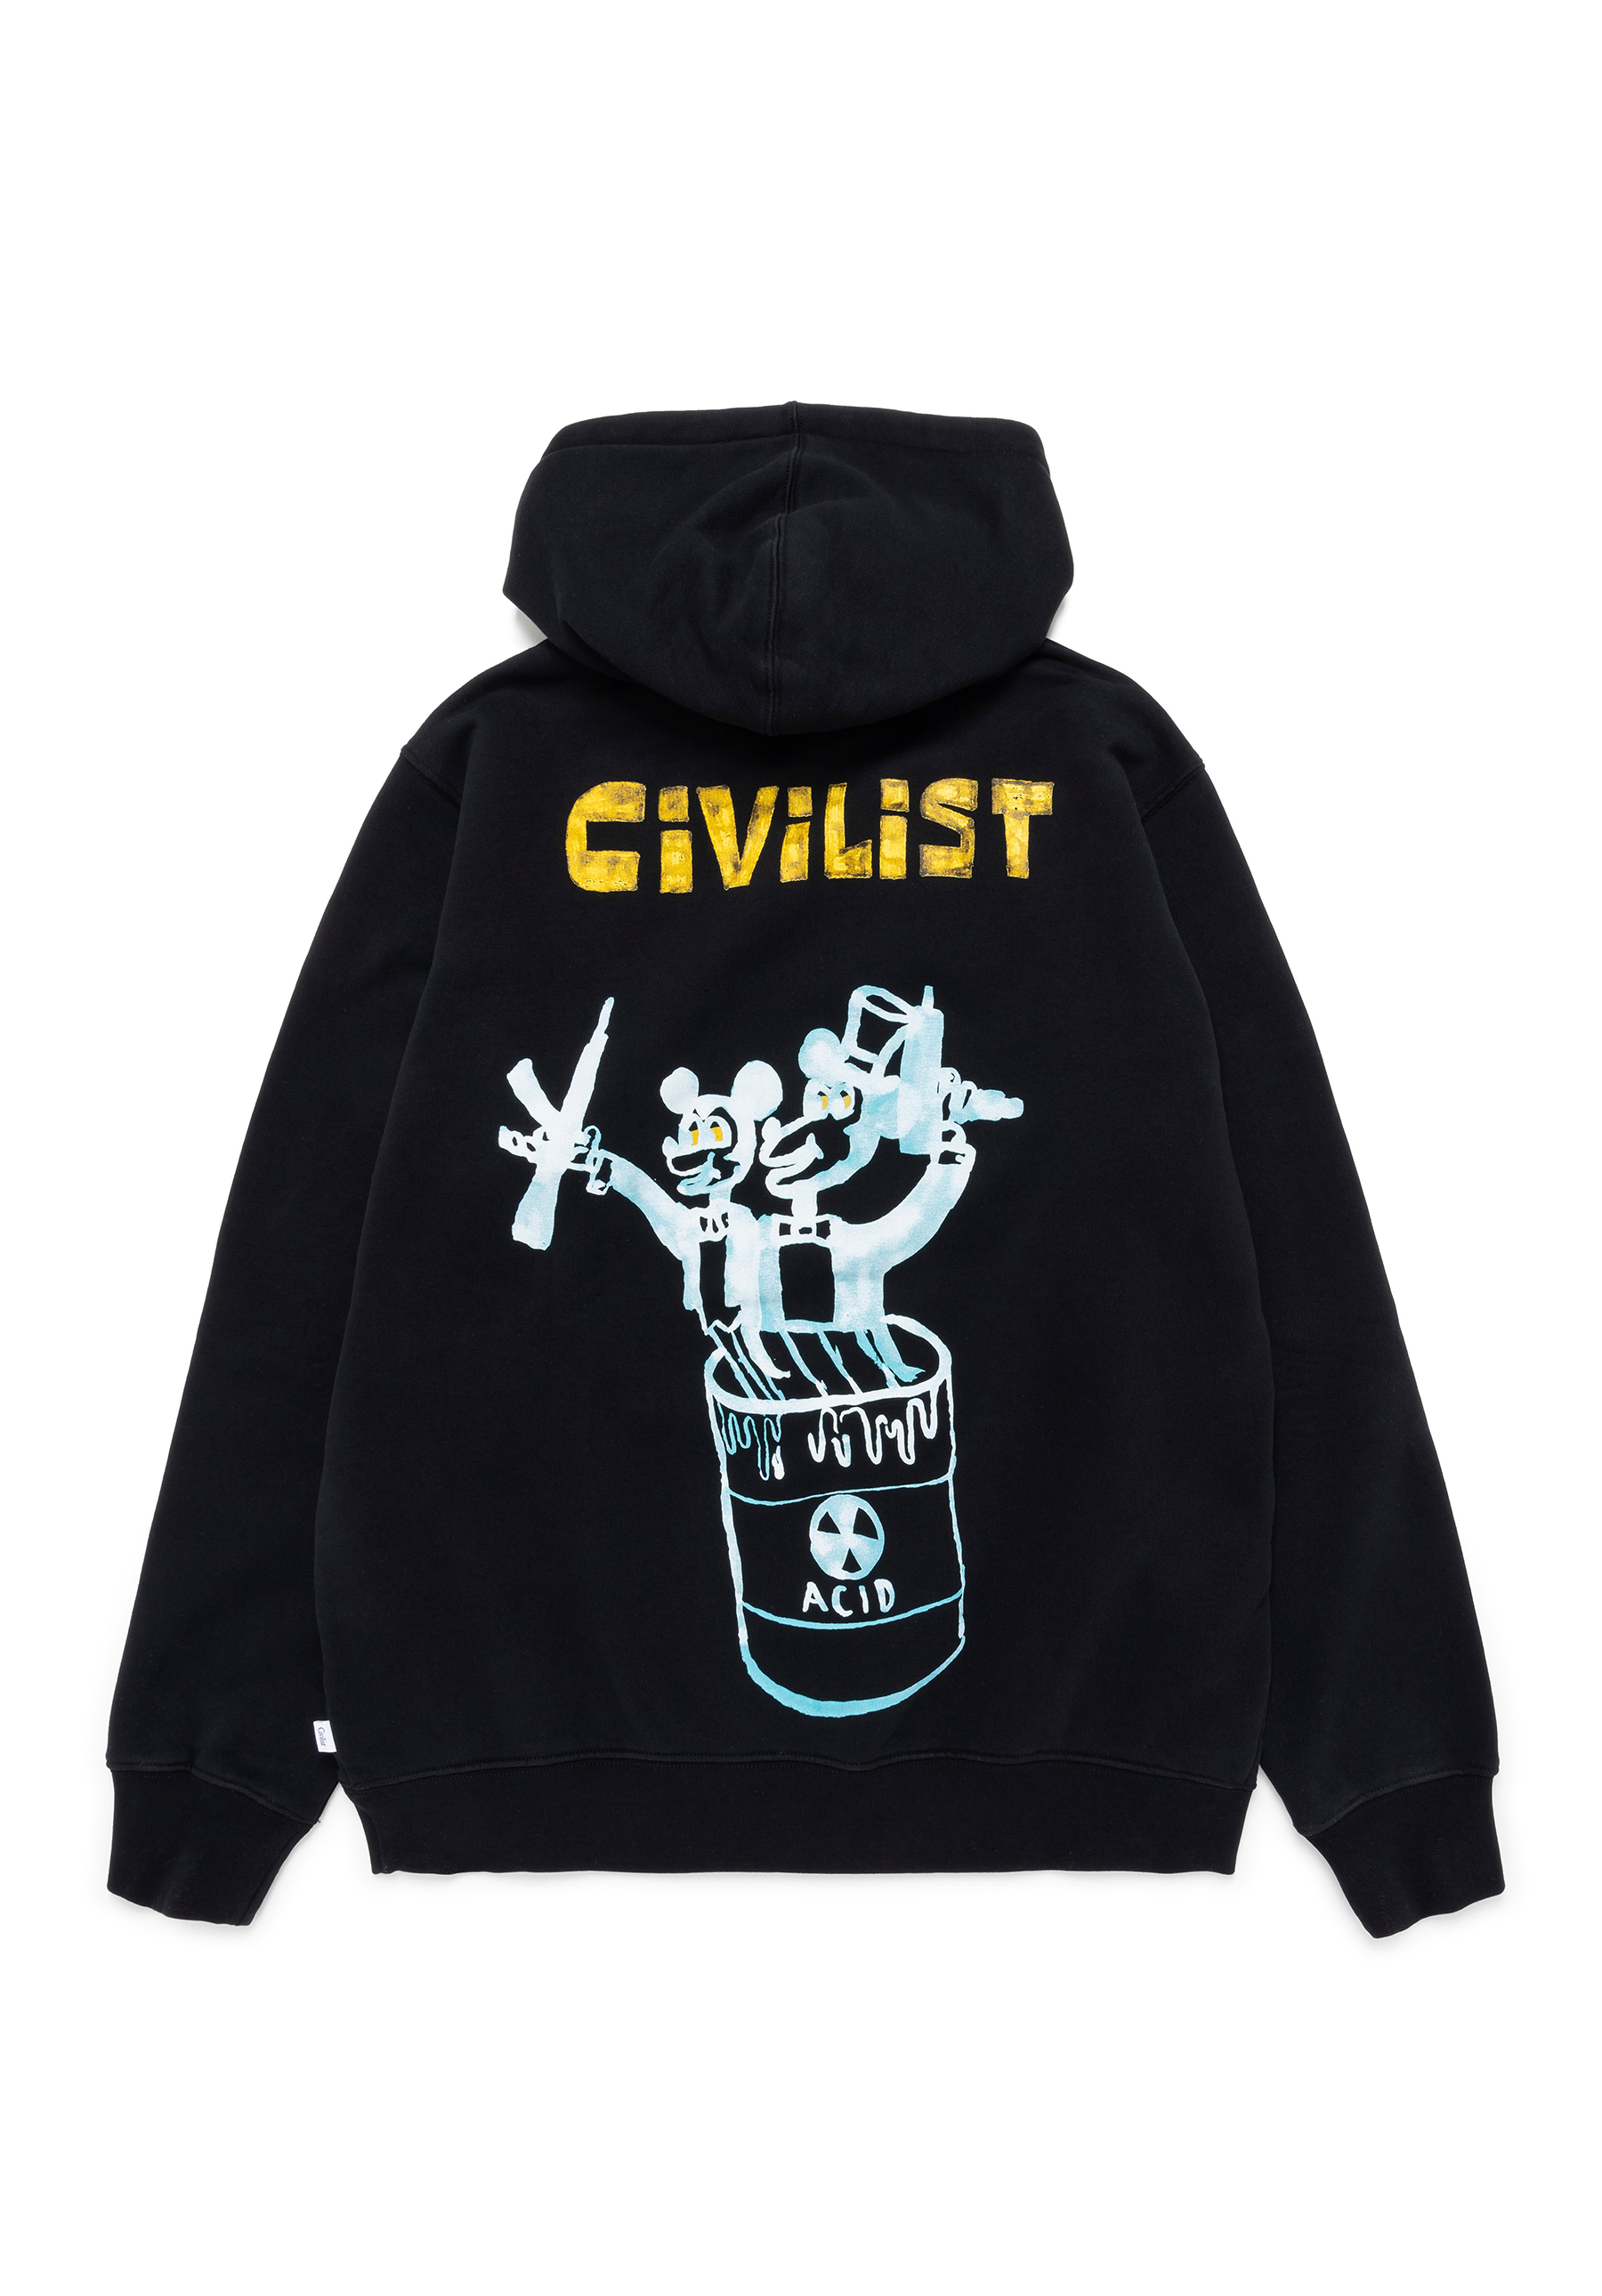 Civilist - Mouse Hood - Black